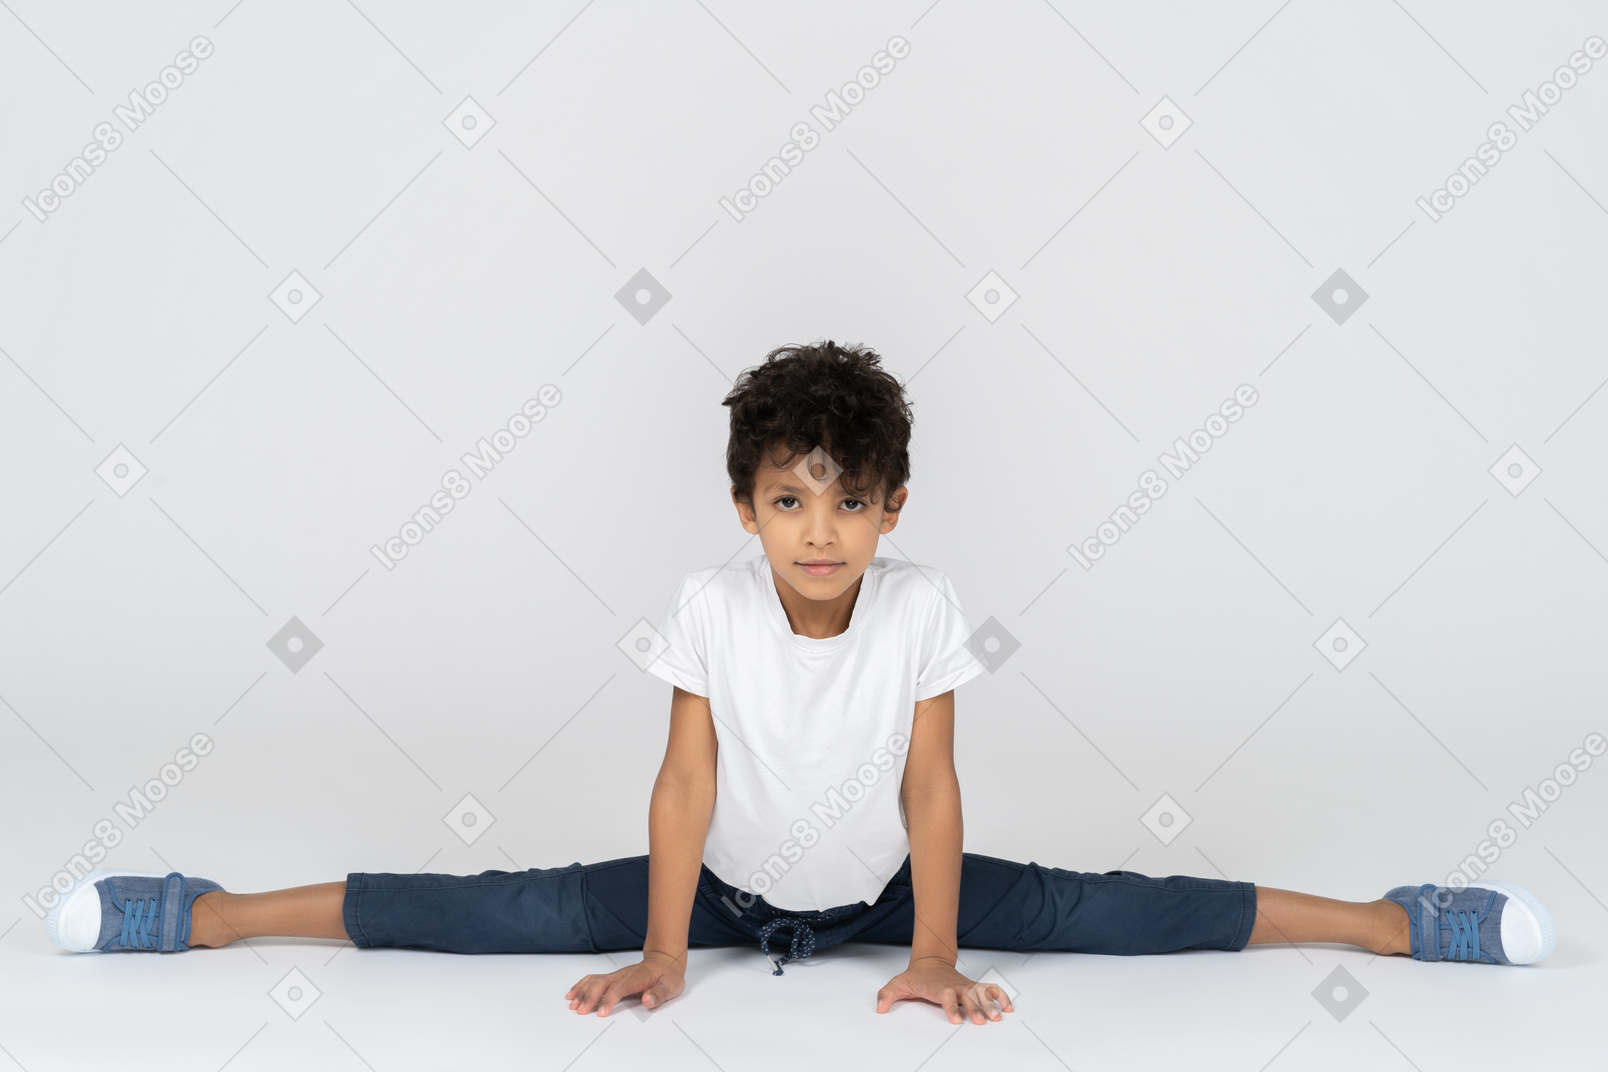 Un niño haciendo ejercicio dividido